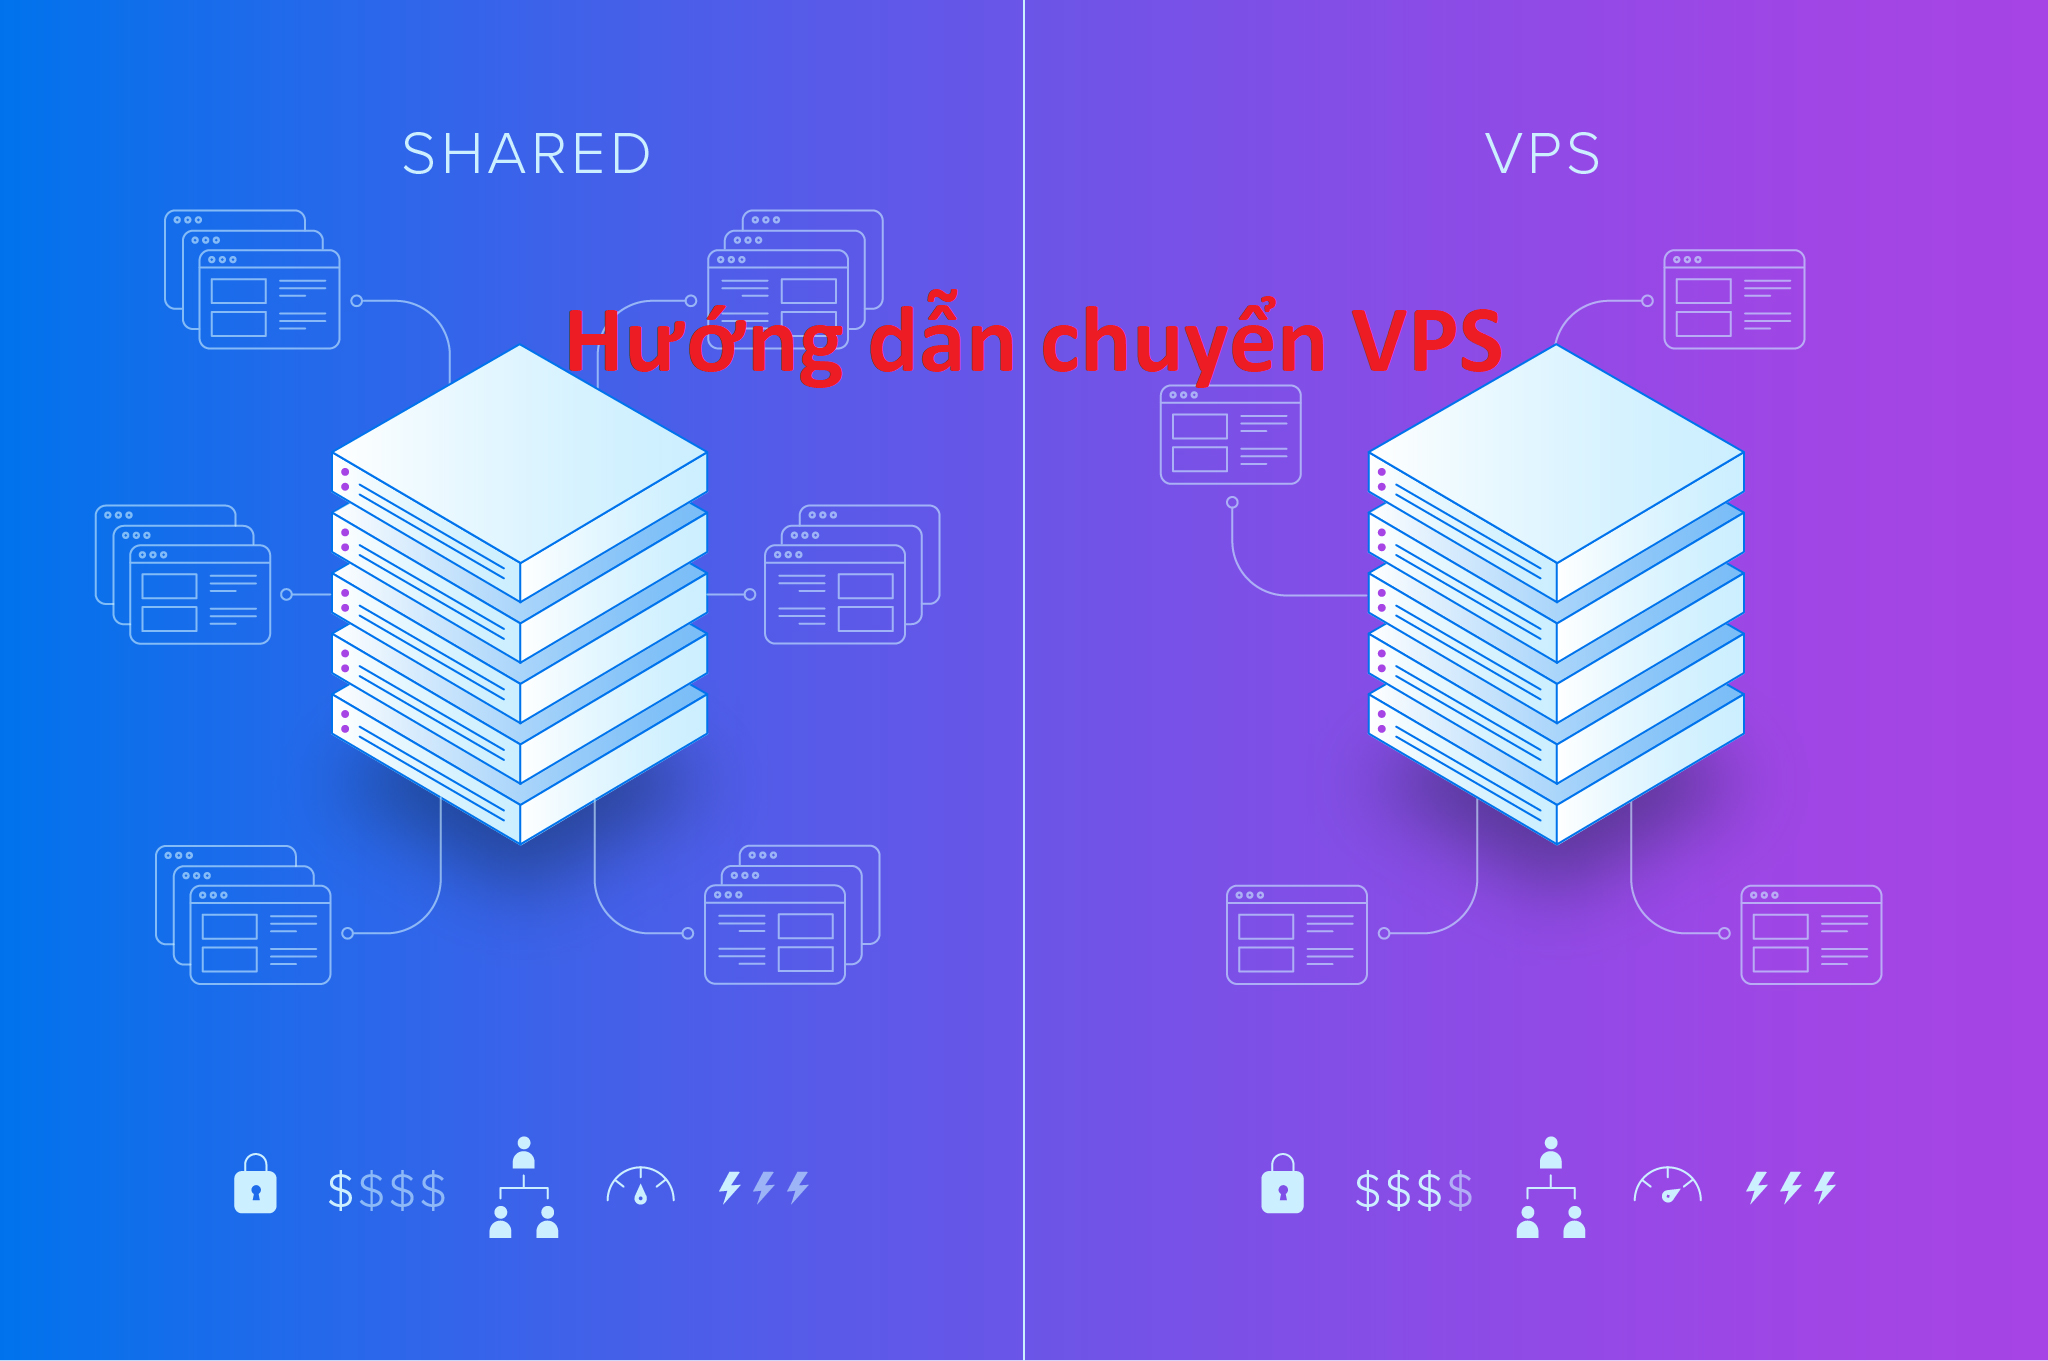 Hướng dẫn gửi yêu cầu chuyển nhượng VPS cho khách hàng khác tại hệ thống VinaCloud.vn